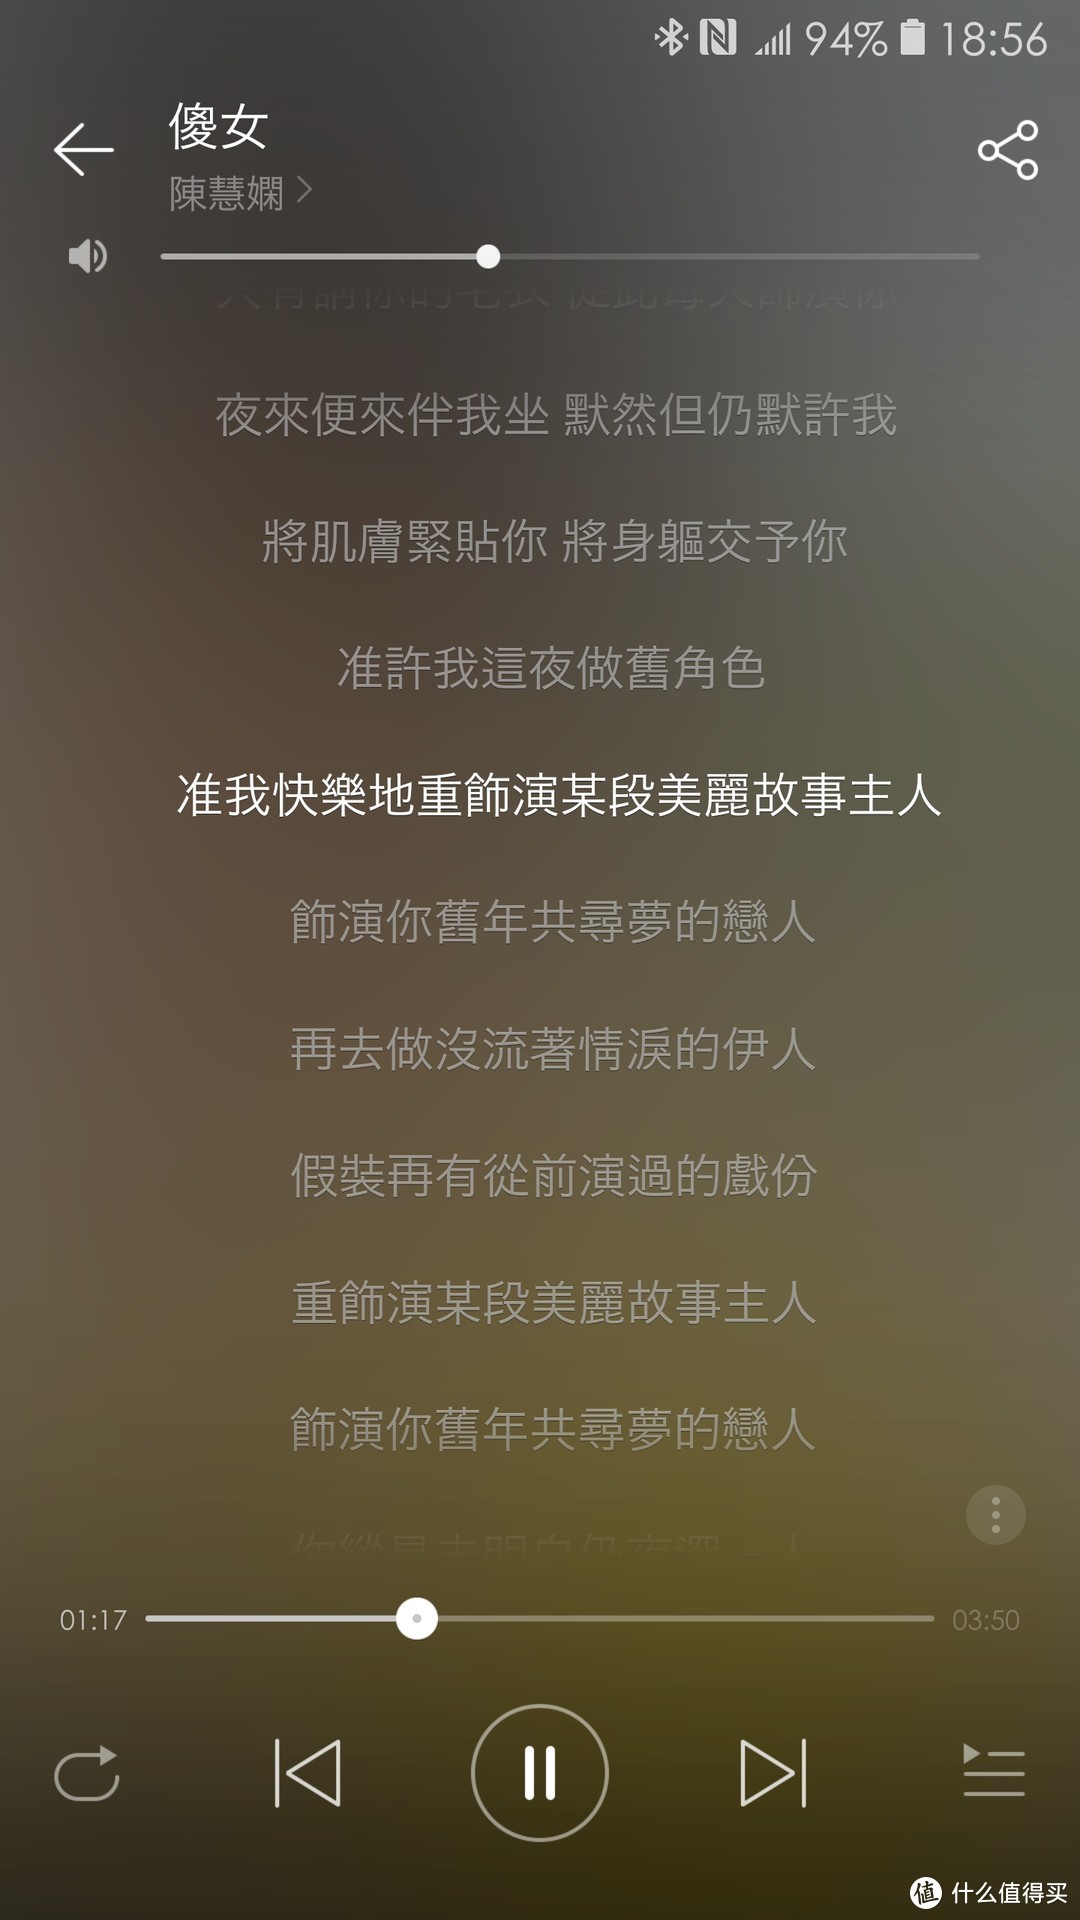 三星S7上，网易云音乐简体字歌词显示传统汉字